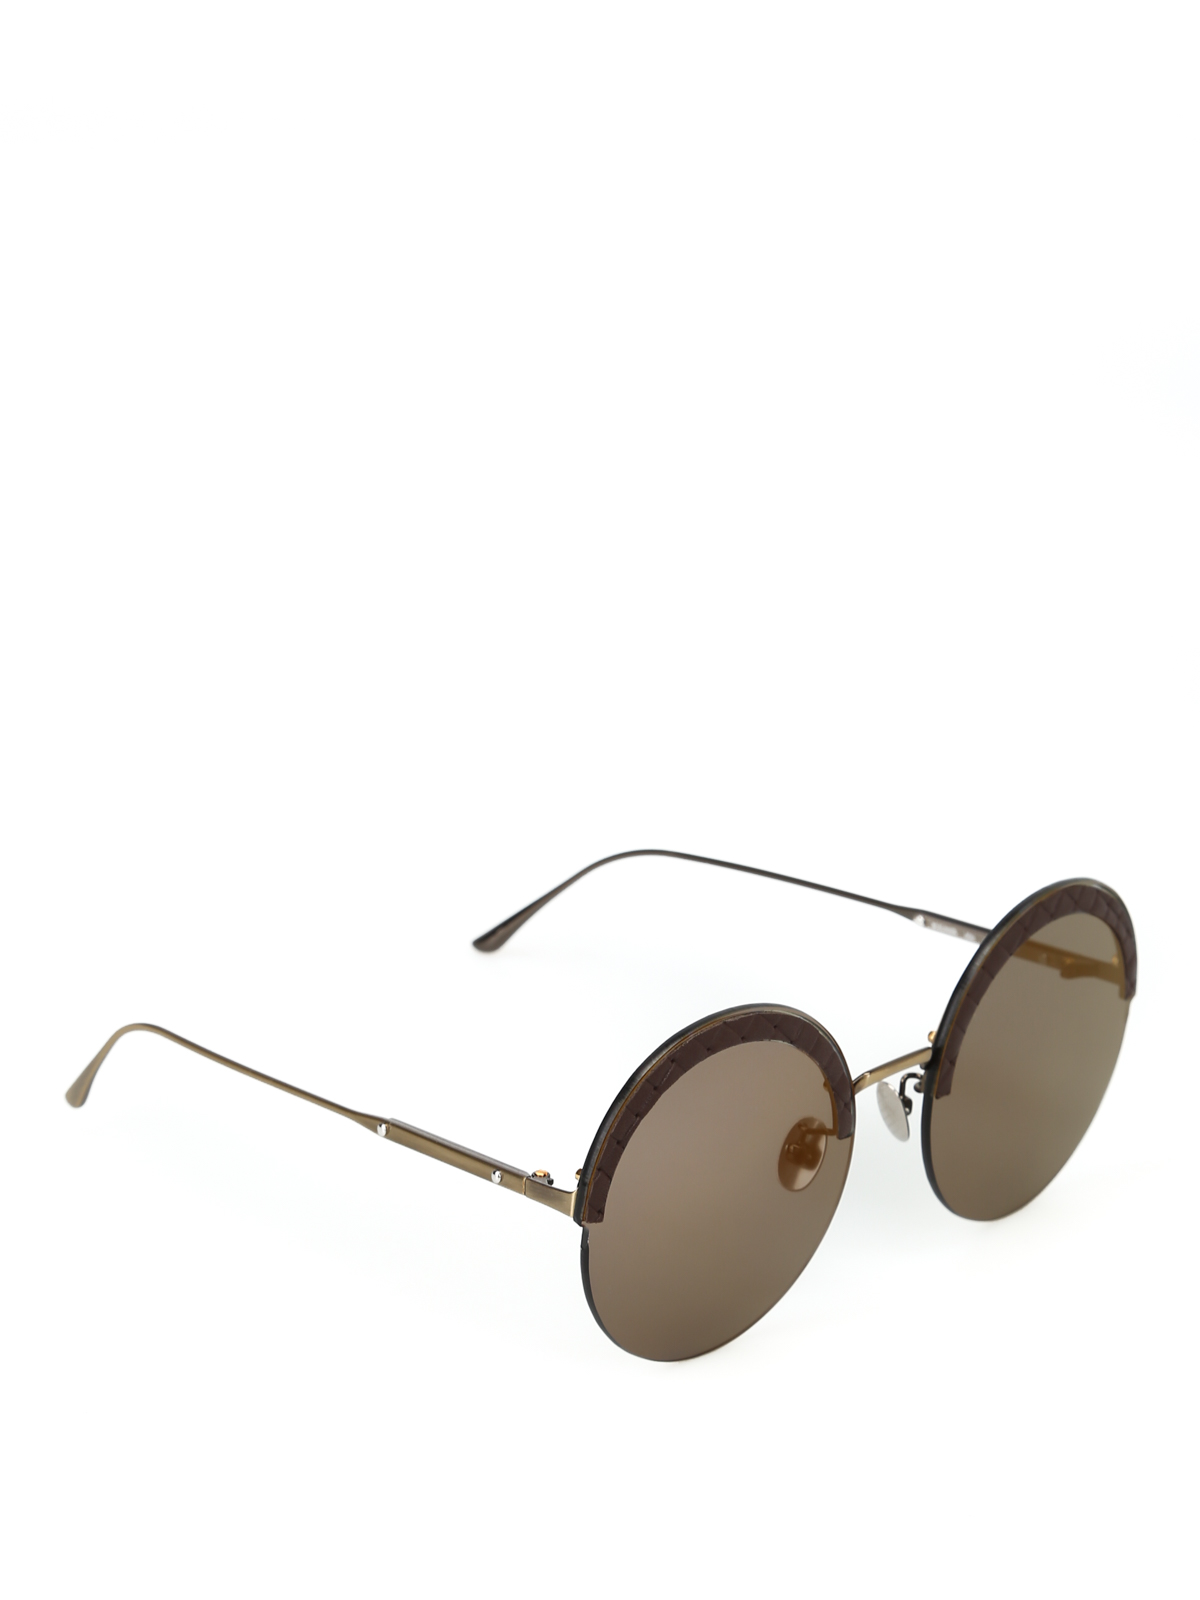 Bottega Veneta, Accessories, New Bottega Veneta Calfskin Leather Acetate  Cat Eye Sunglasses W Origi